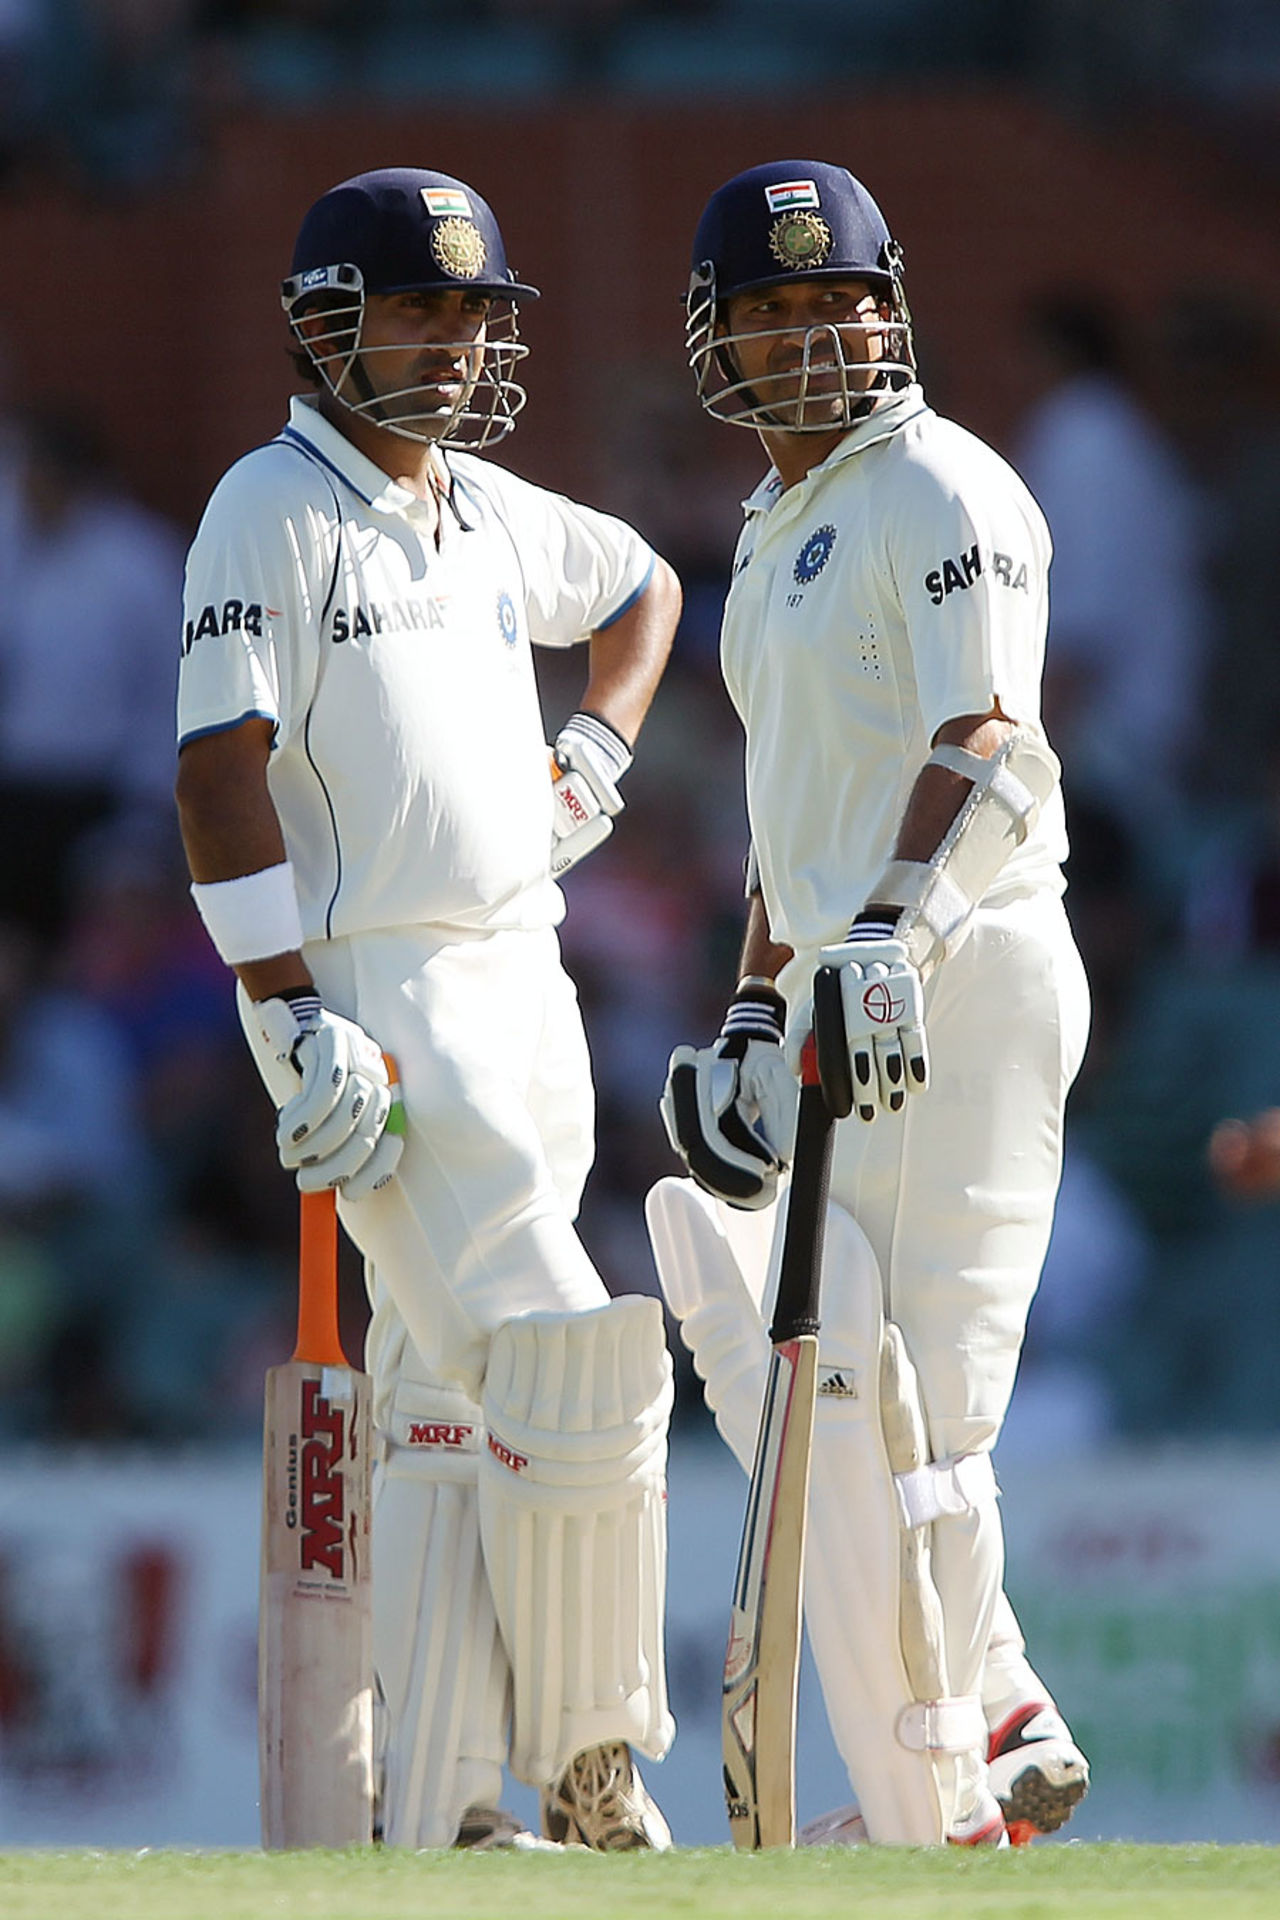 Gautam Gambhir and Sachin Tendulkar went to stumps unbeaten, Australia v India, 4th Test, Adelaide, 2nd day, January 25, 2012